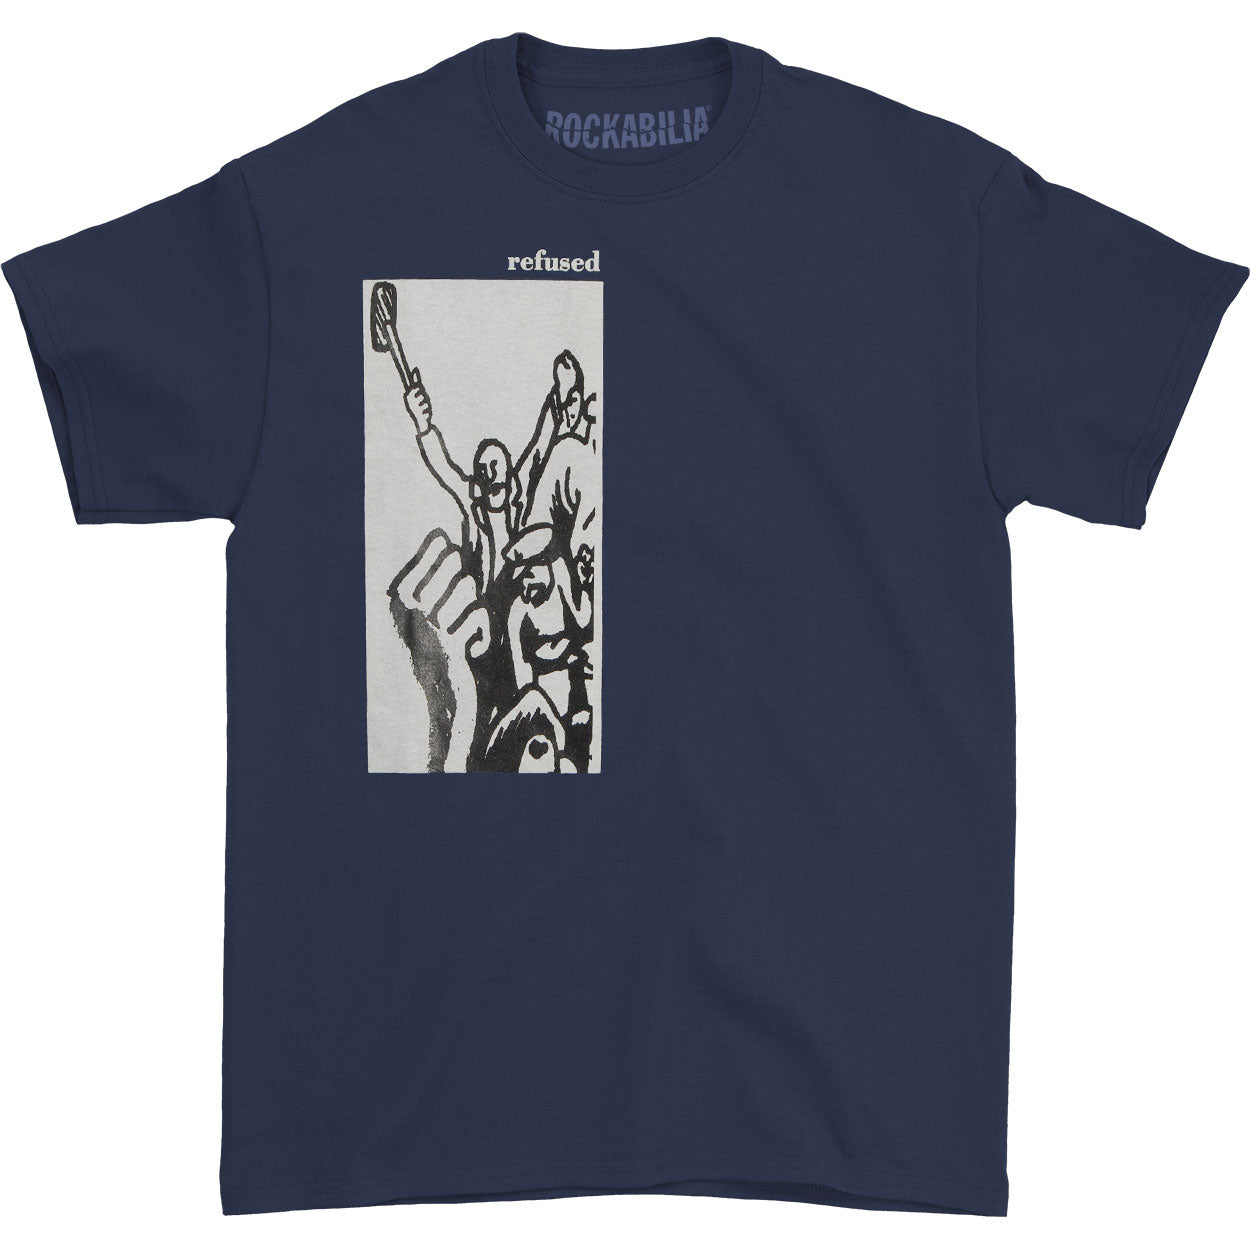 Revolution T-shirt – Tmerch Store